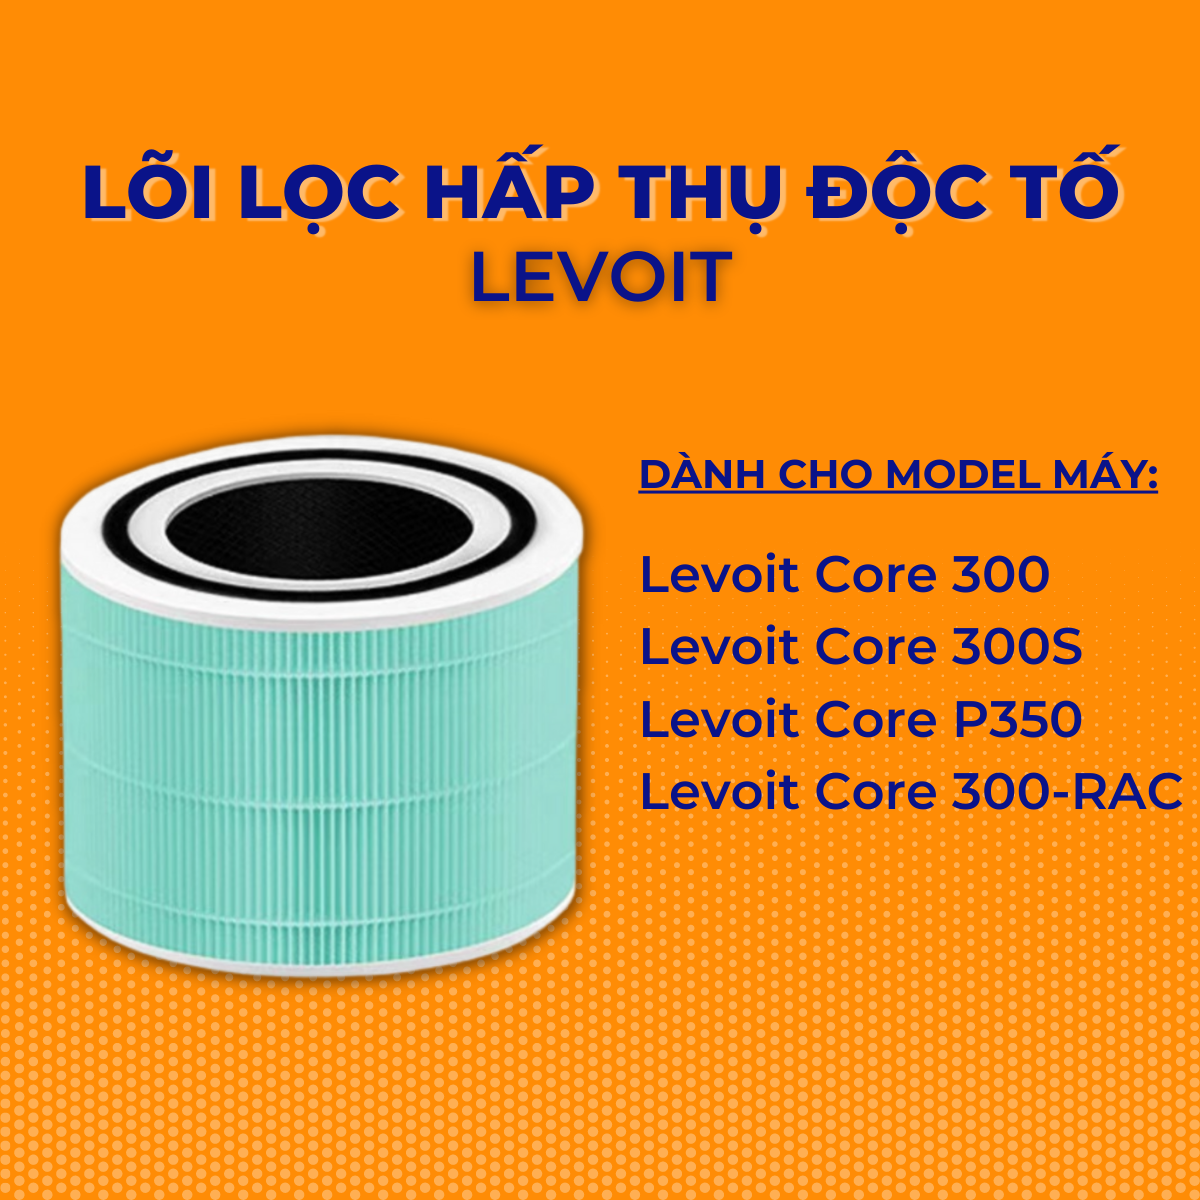 Lõi Lọc Hấp Thụ Độc Tố cho Máy Lọc Không Khí Levoit Core 300/300S RF. Bộ lọc Hepa 3 lớp giá rẻ chất lượng cao